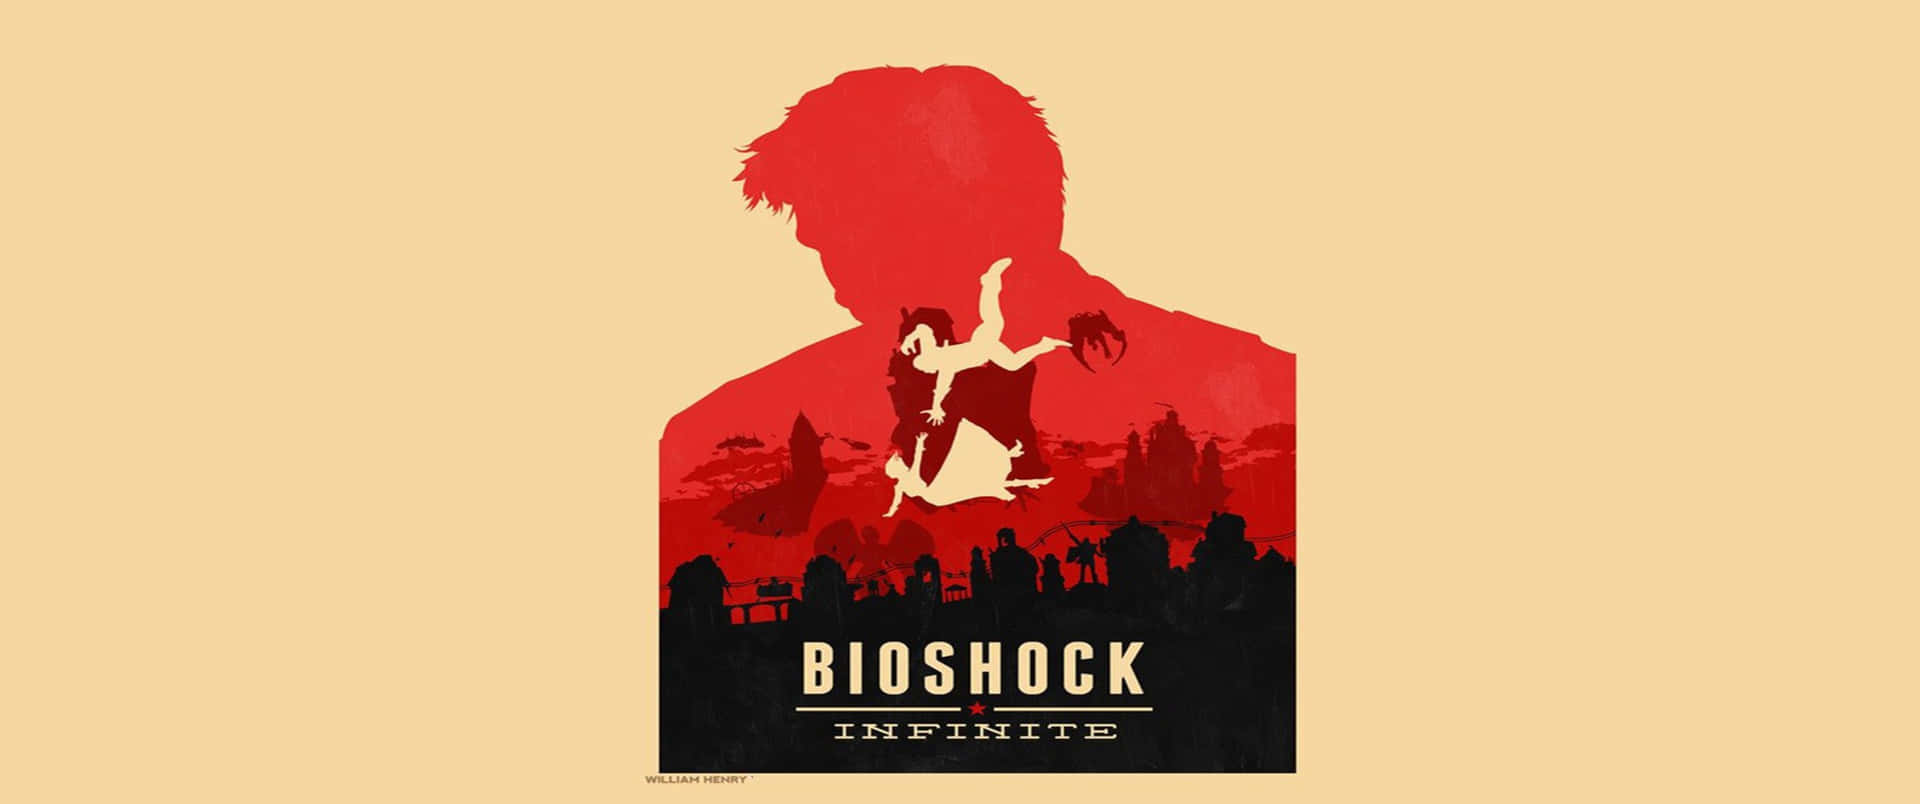 Silhouettedi Booker 3440x1440p Sfondo Di Bioshock Infinite